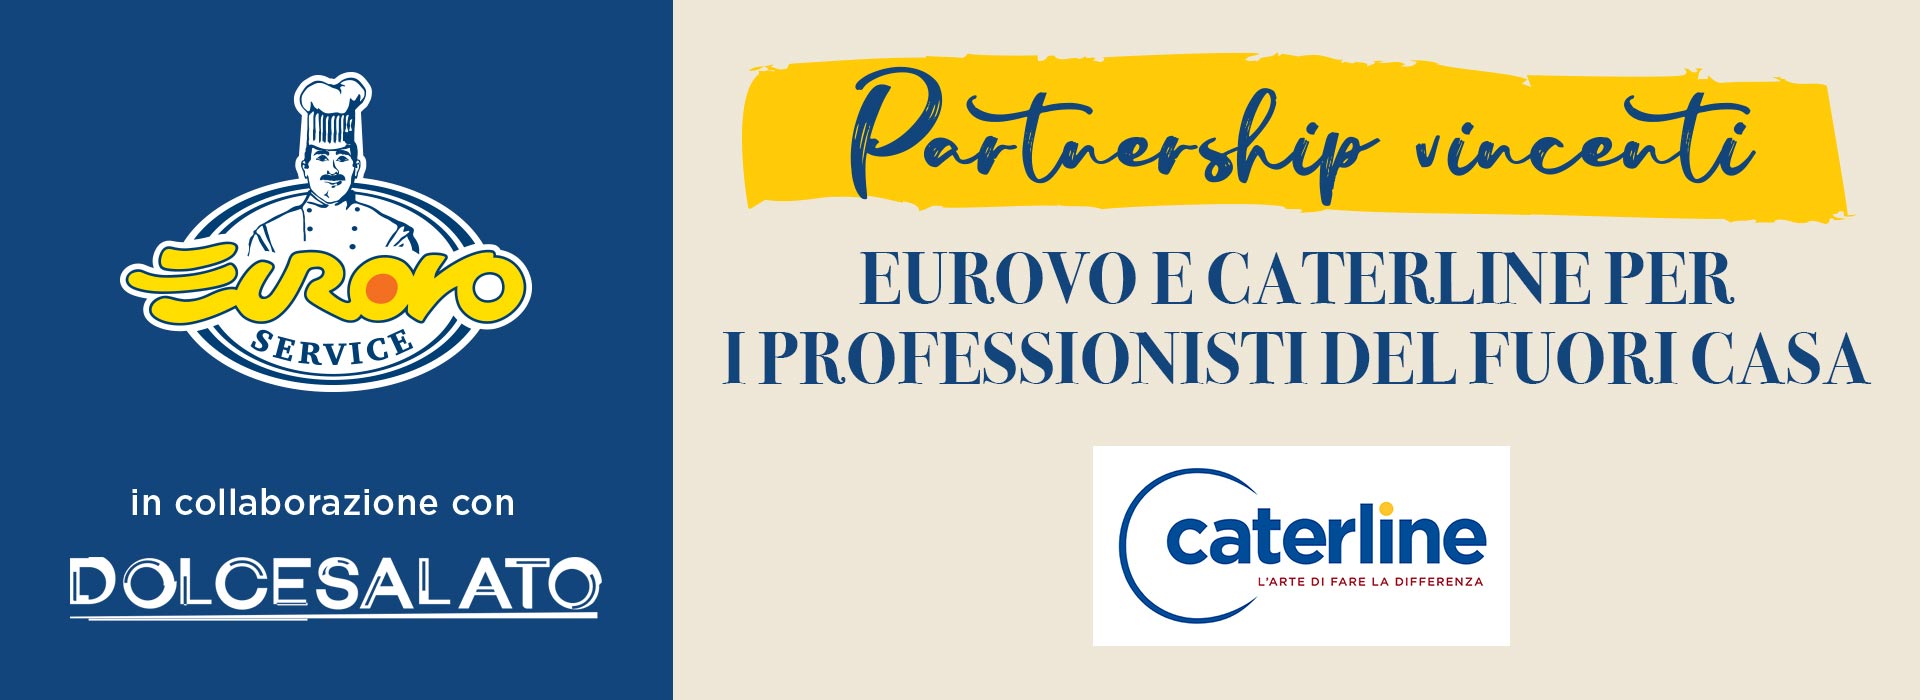 EUROVO E CATERLINE PER I PROFESSIONISTI DEL FUORI CASA